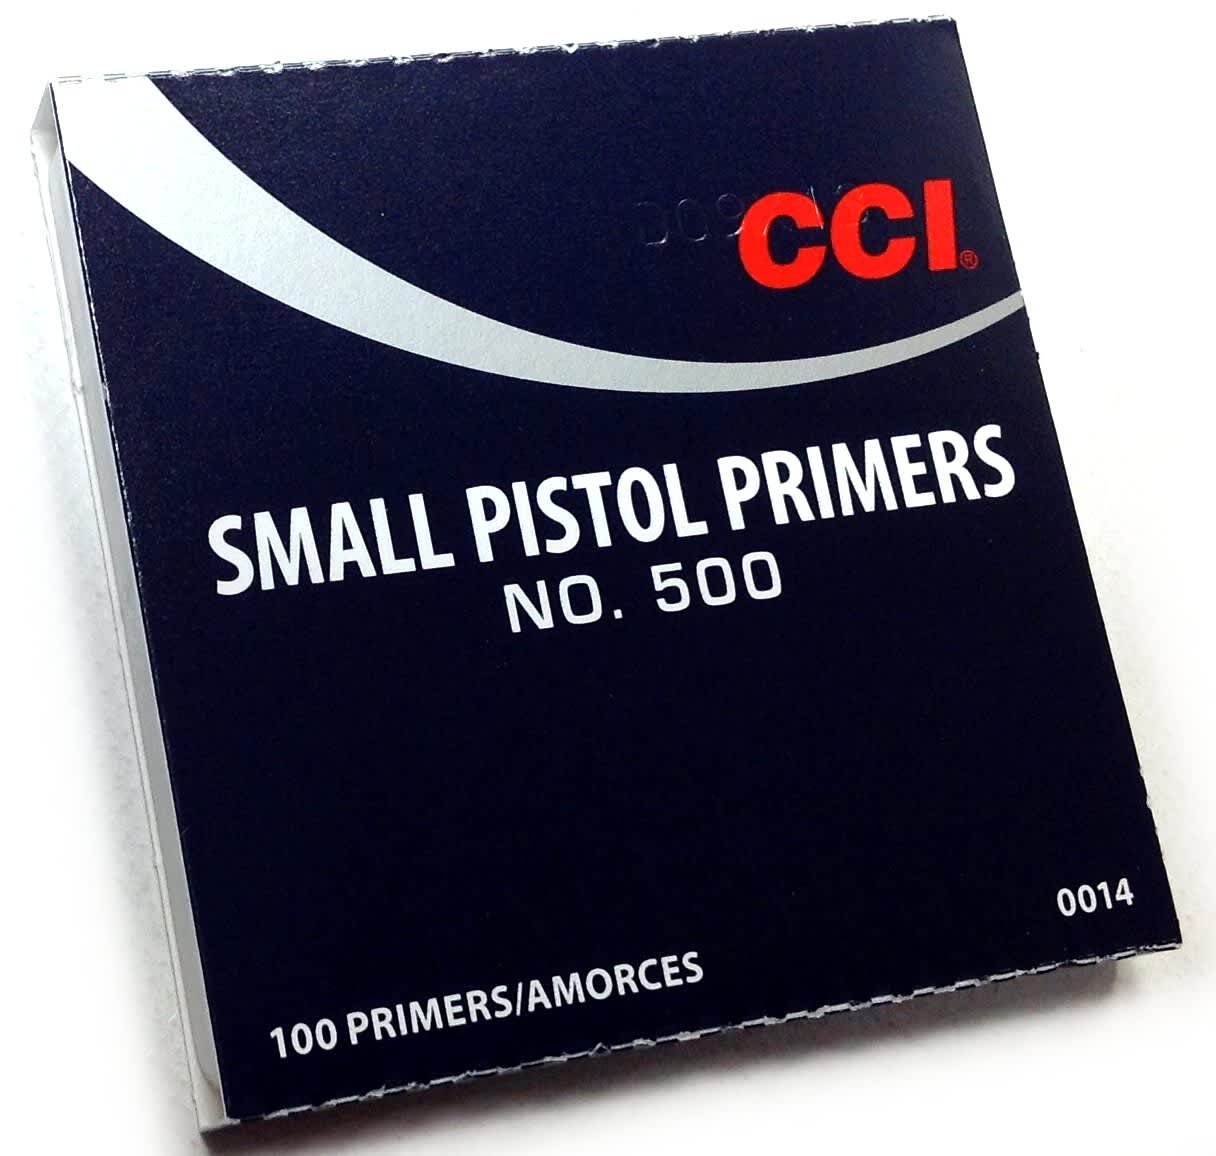 CCI Primers Pistol 500 Small.